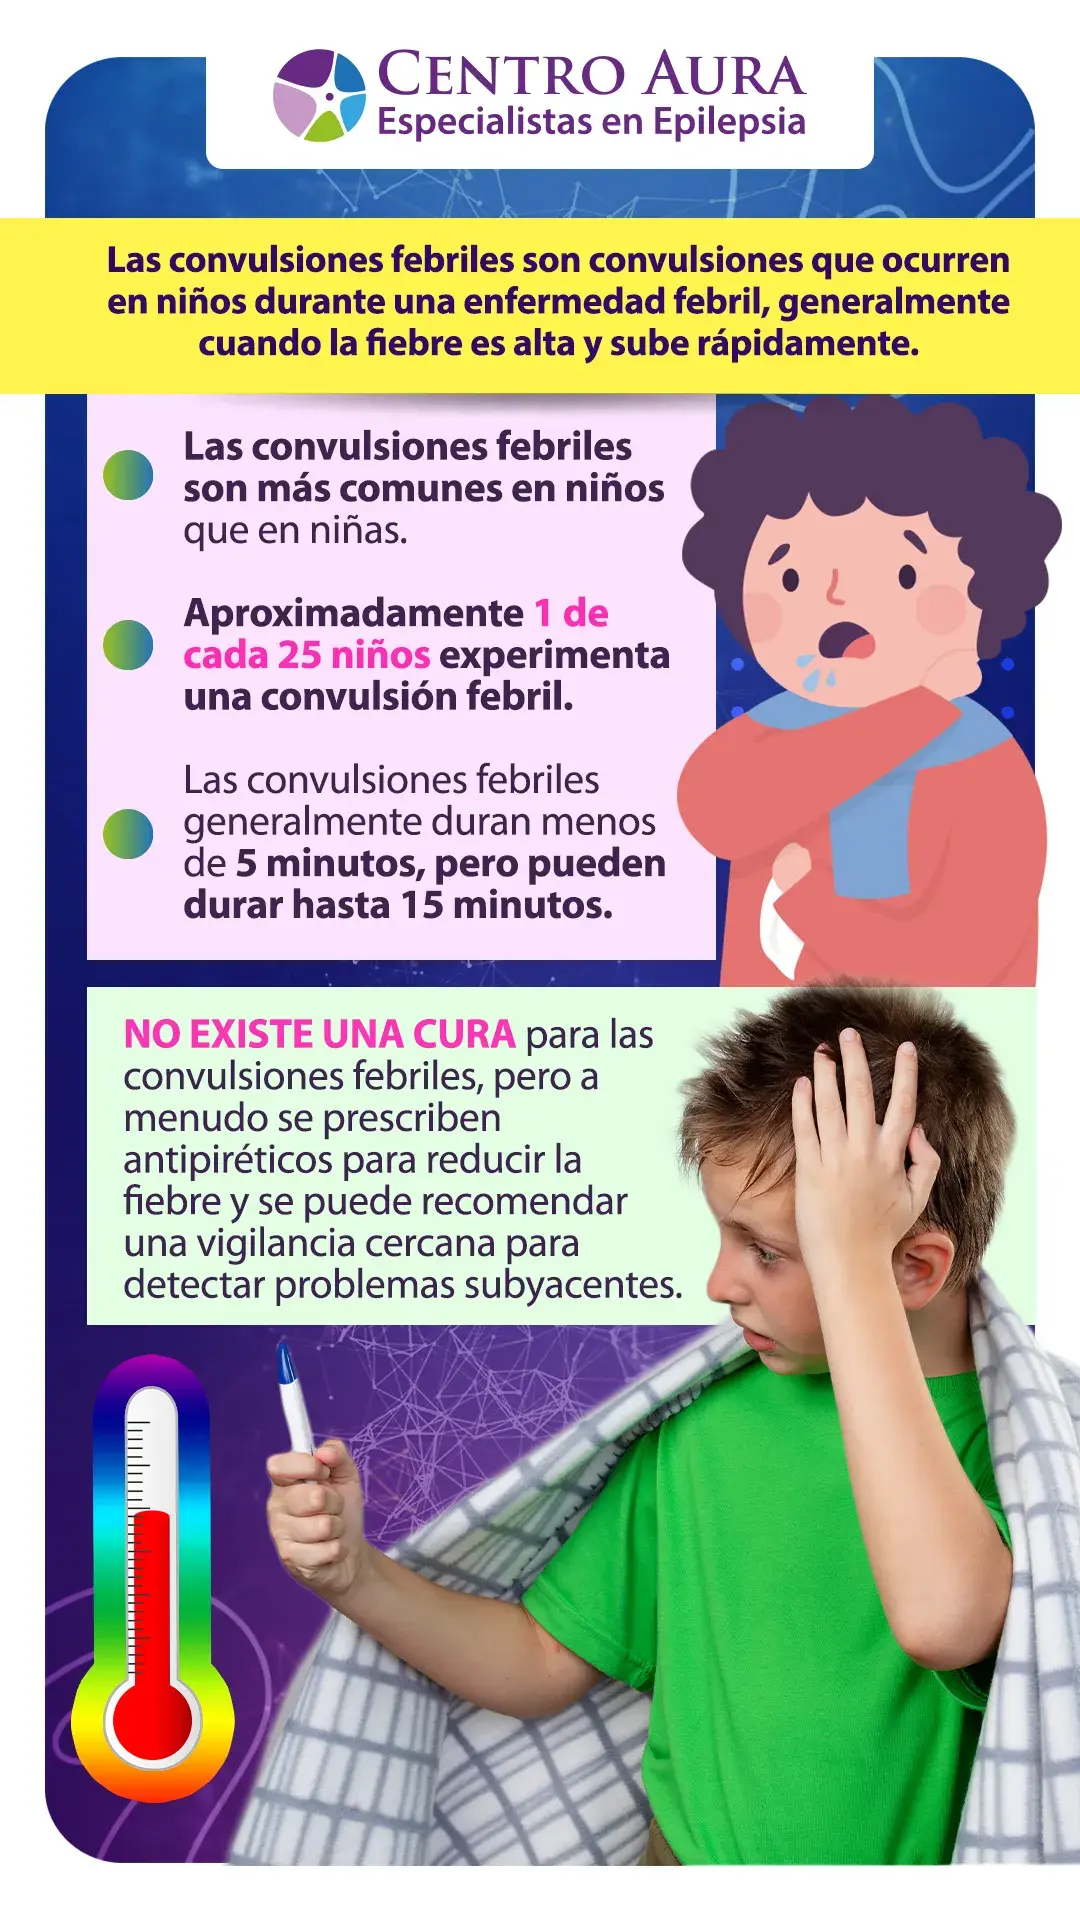 Las convulsiones por fiebre son más comunes en niños y niñas cuando su cuerpo sube a altas temperaturas